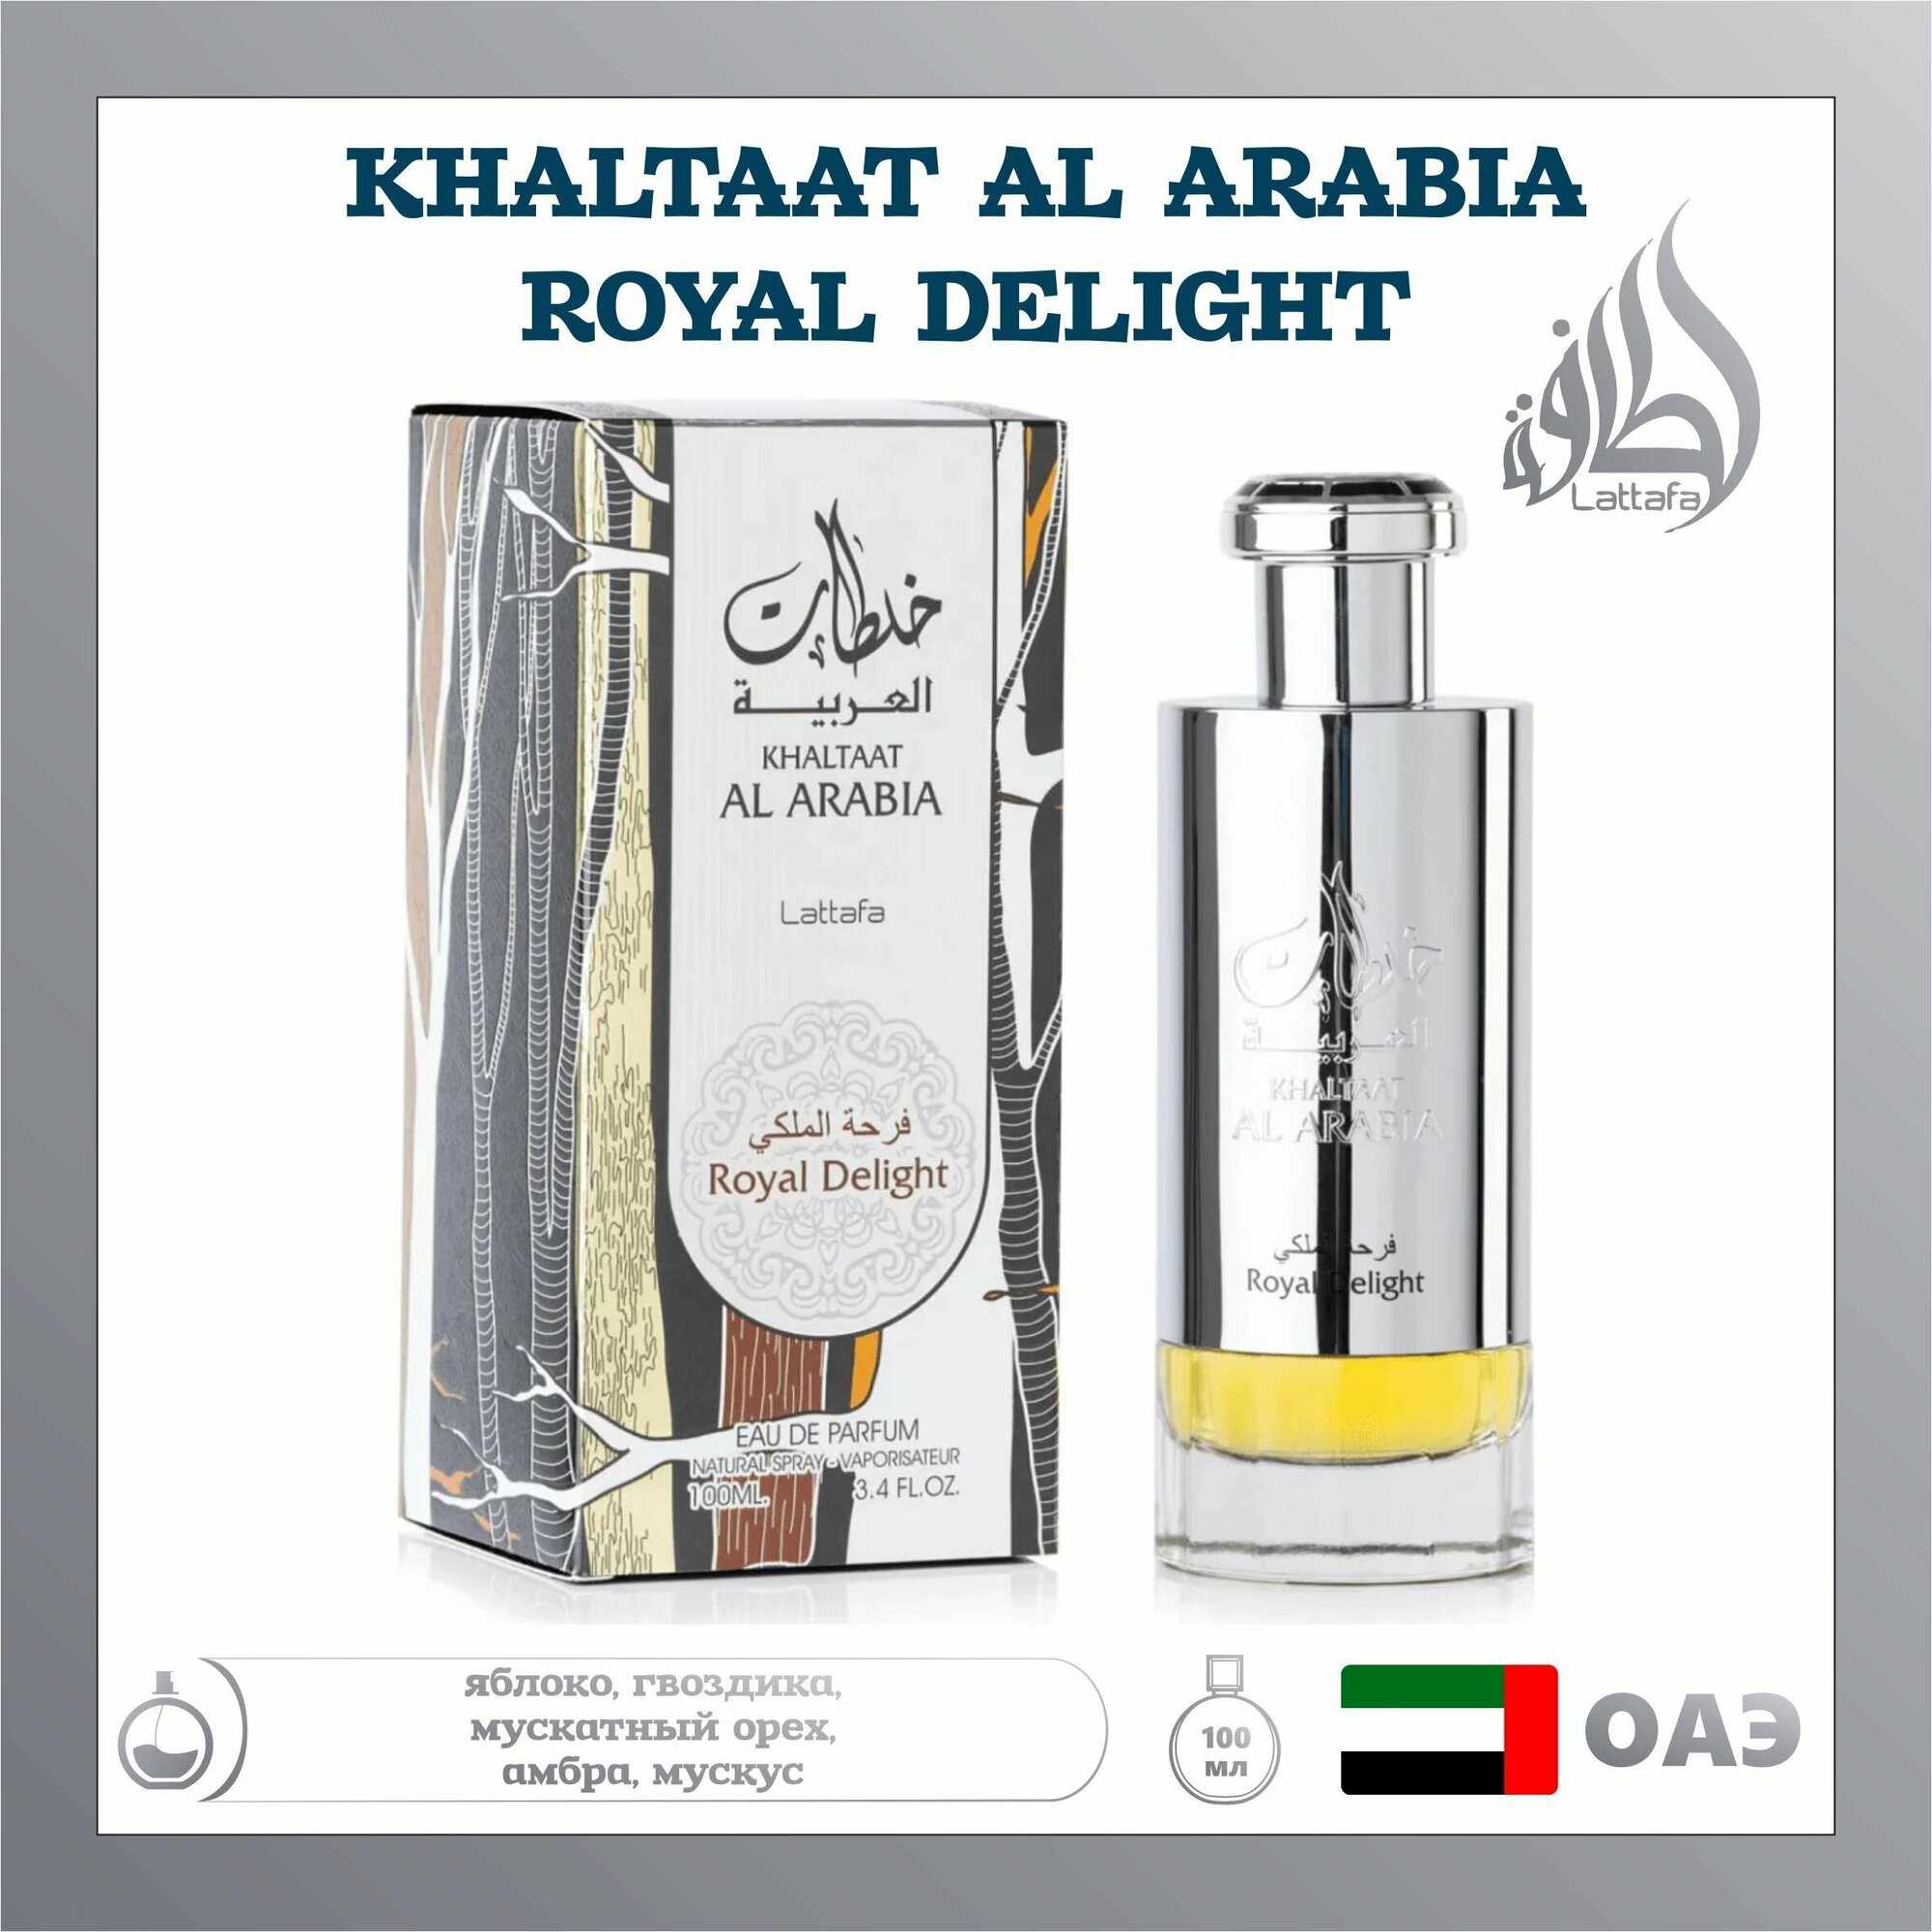 Арабский парфюм унисекс Khaltaat Al Arabia Royal delight, Lattafa Perfumes, 100 мл